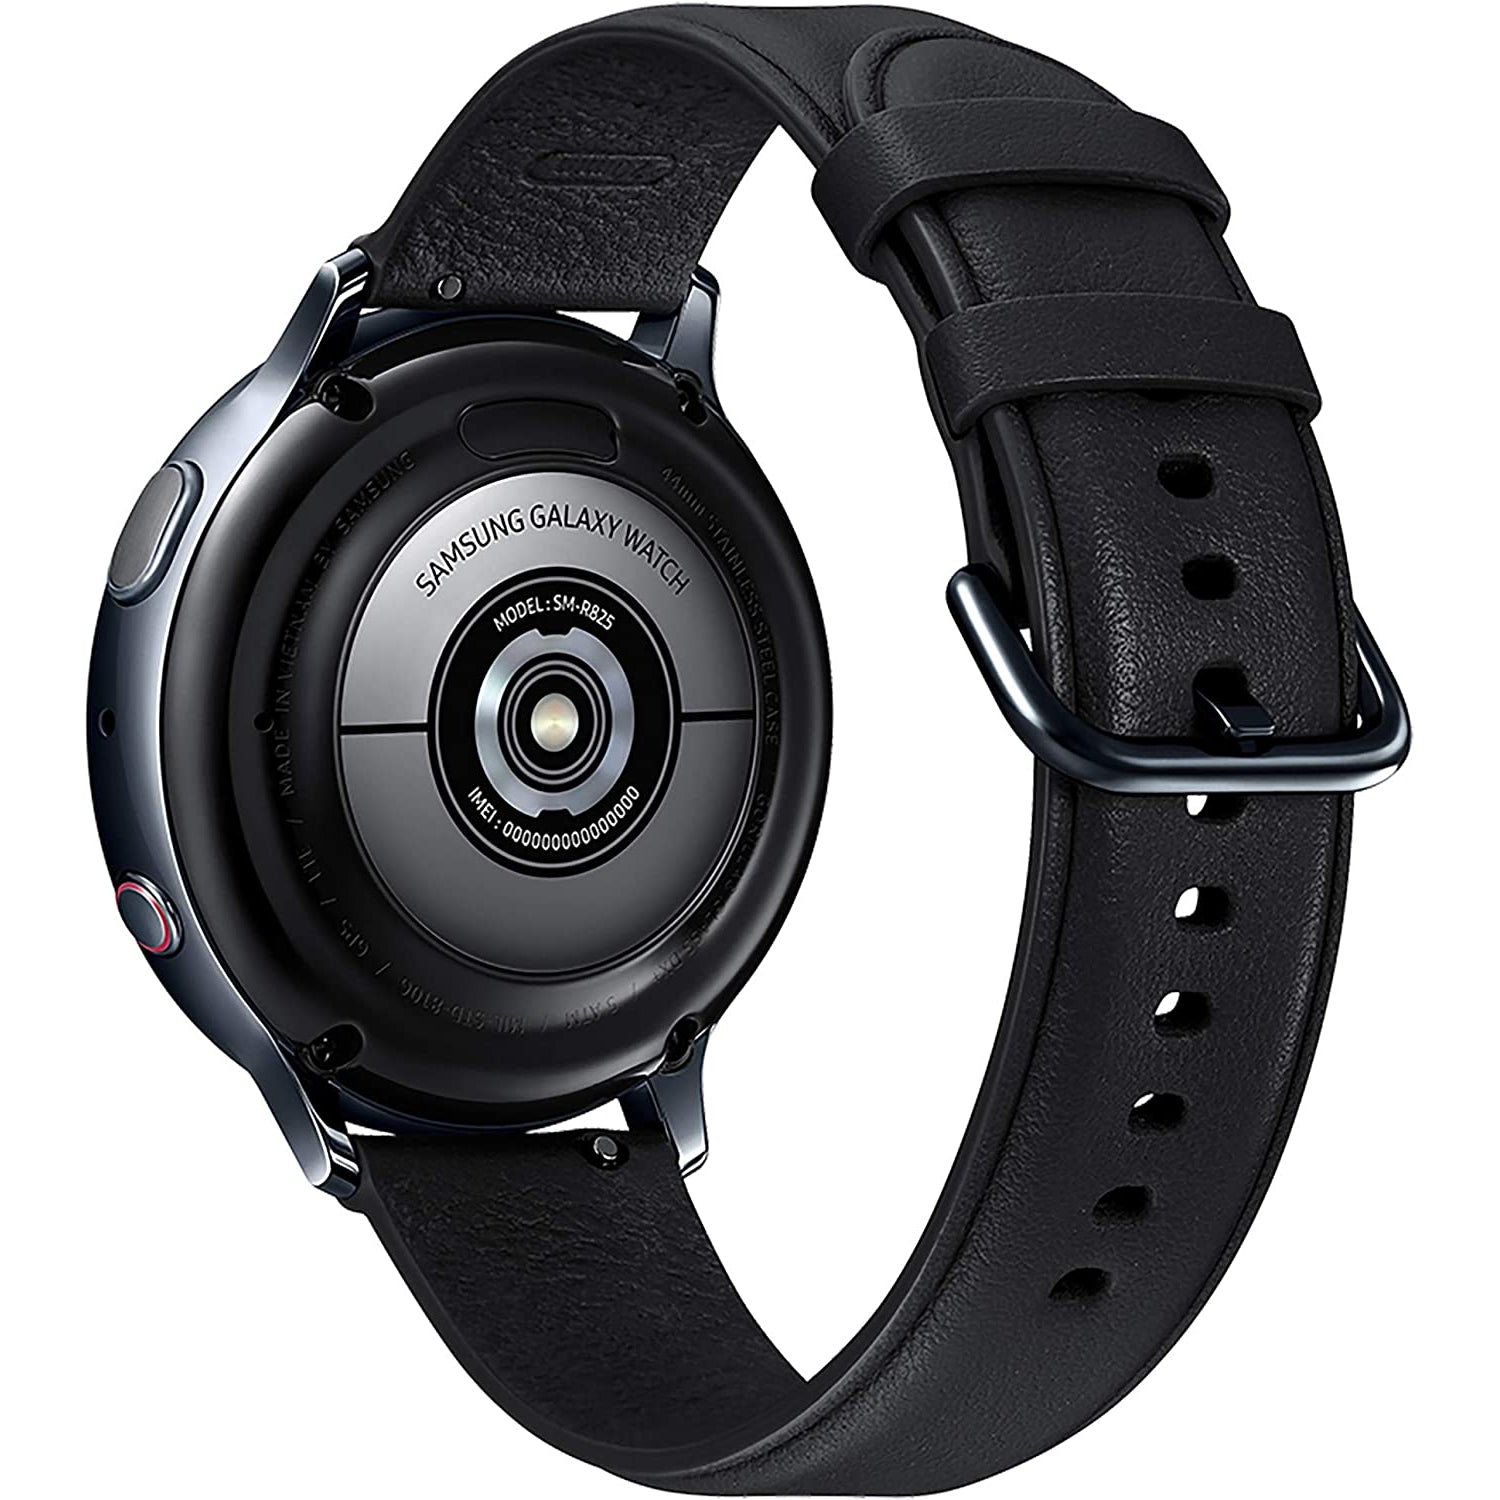 Samsung Galaxy Watch Active 2 4G LTE Stainless Steel 44mm SM-R825F, Black (Pristine)